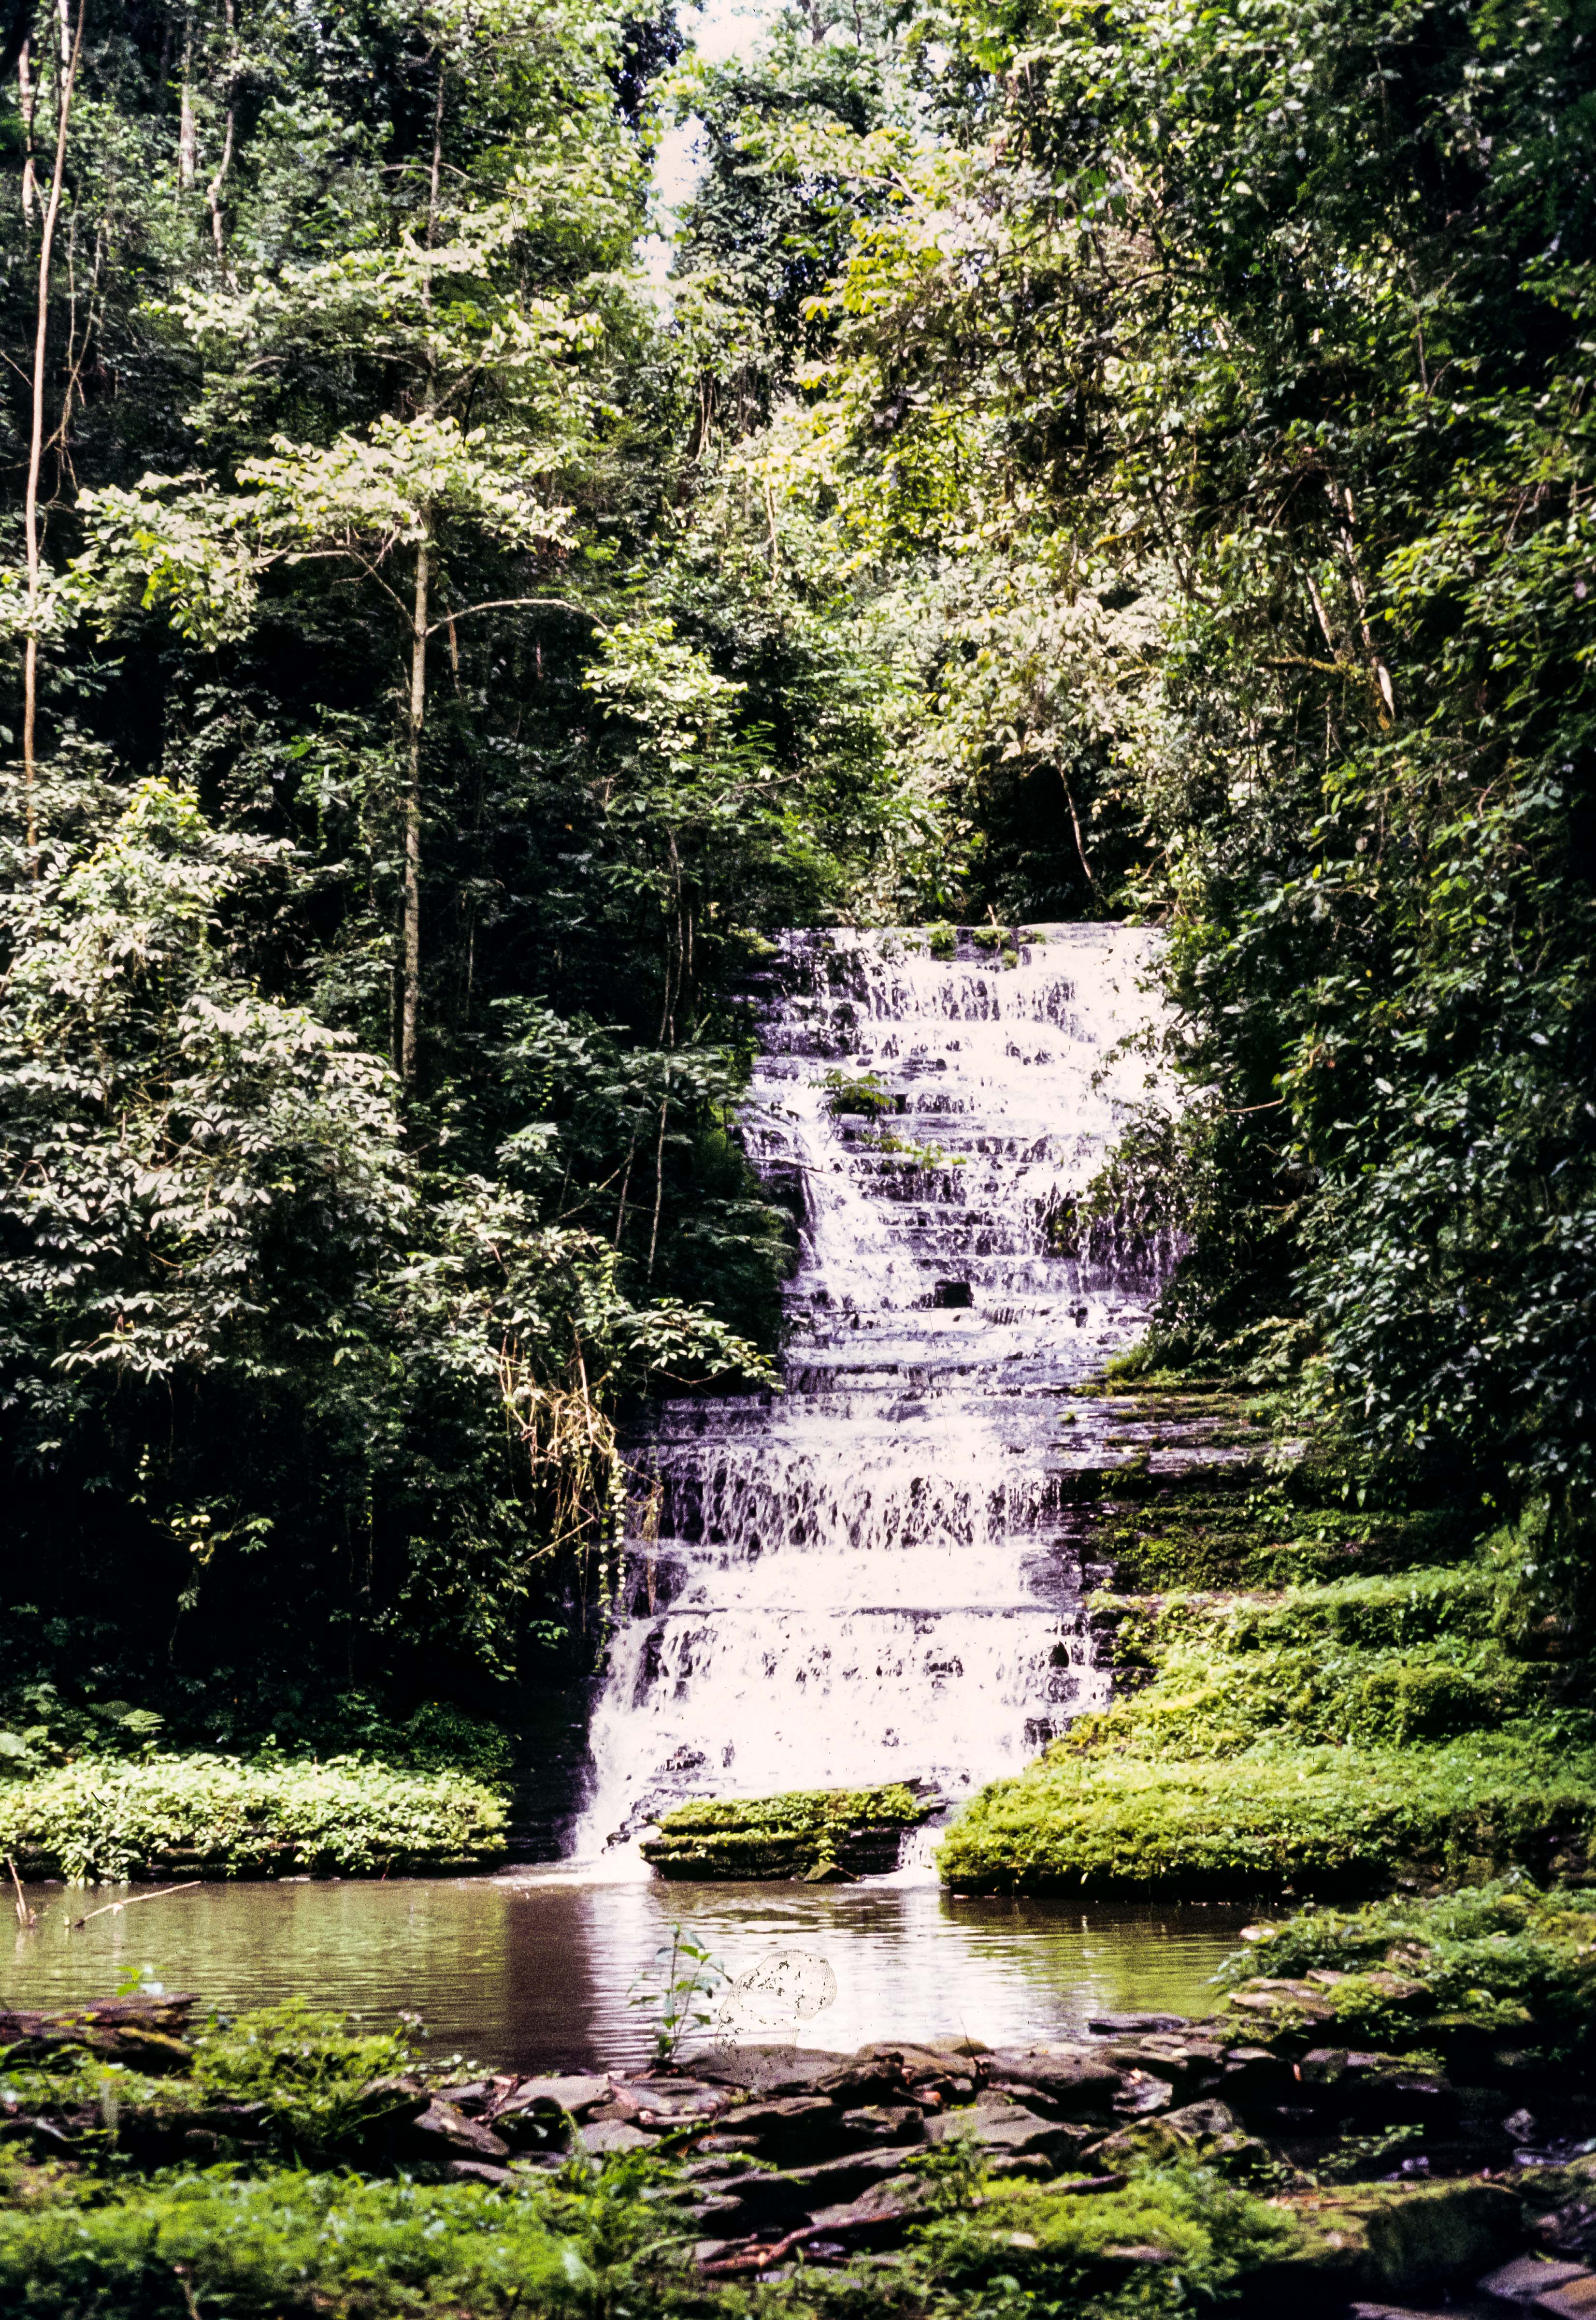 Congo Zaire, Mt. Hoyo Waterfall, 1984